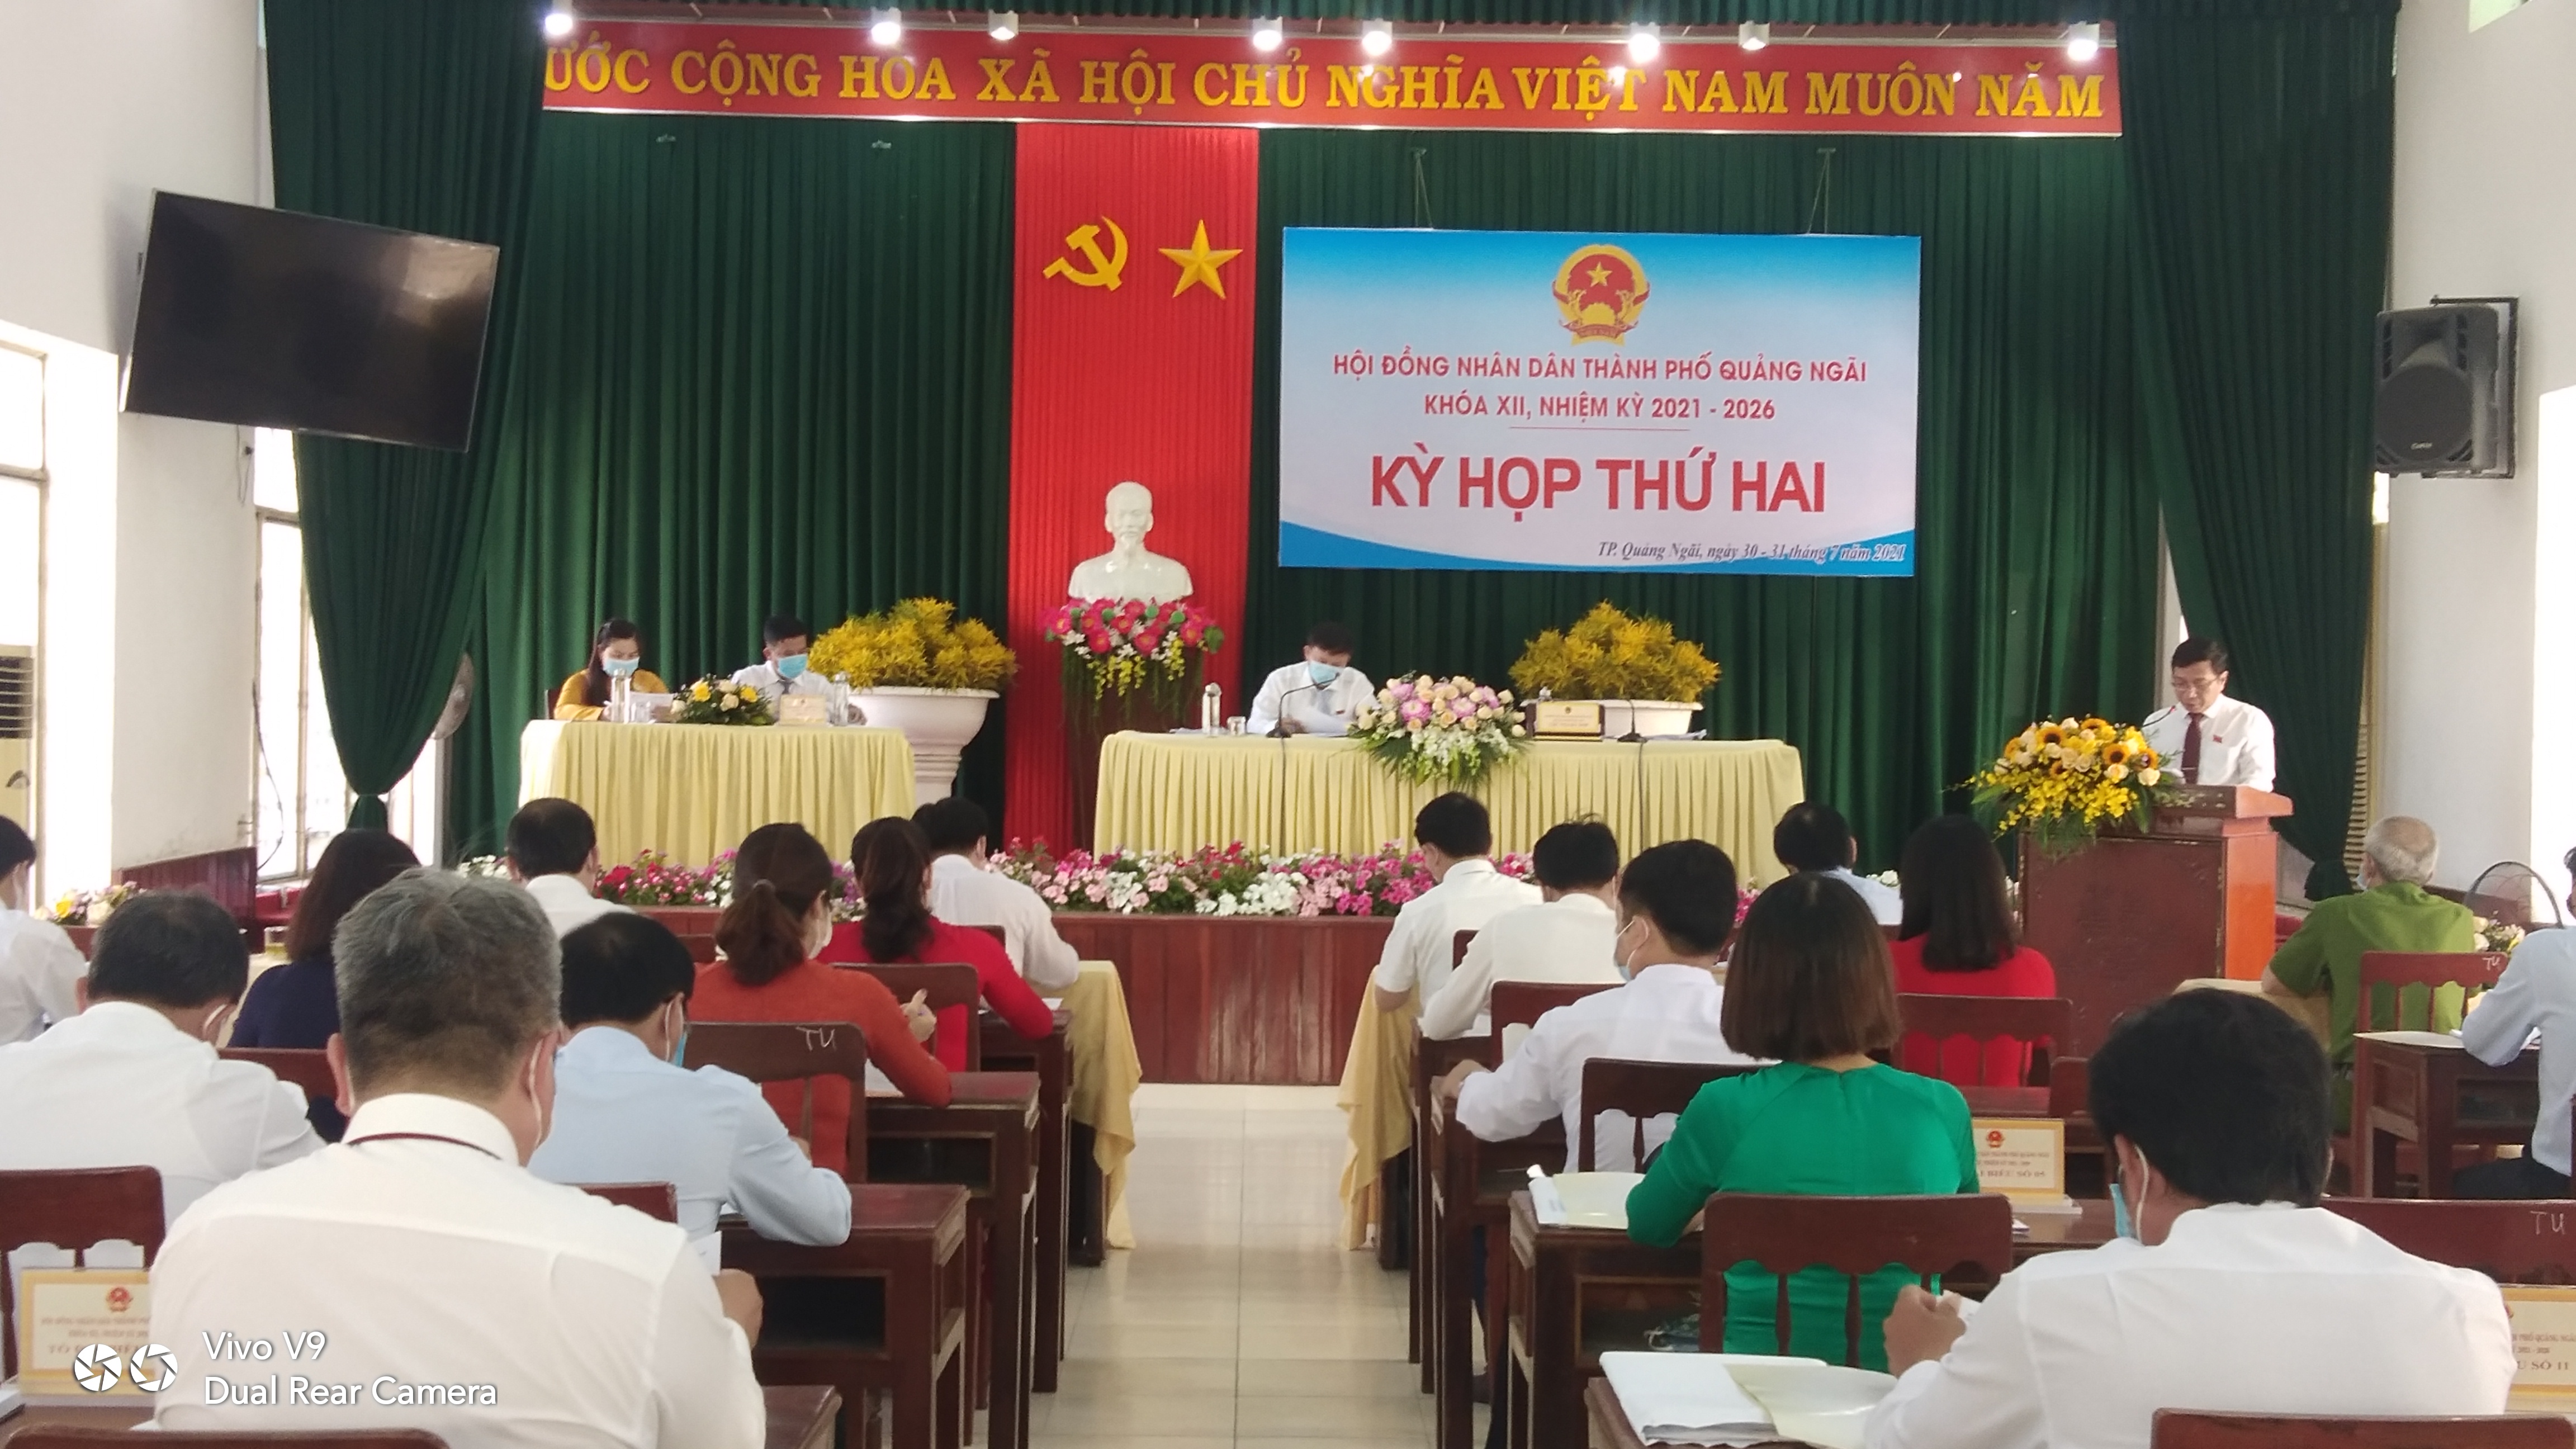 Kỳ họp thứ 2, Hội đồng nhân dân thành phố Quảng Ngãi khóa XII